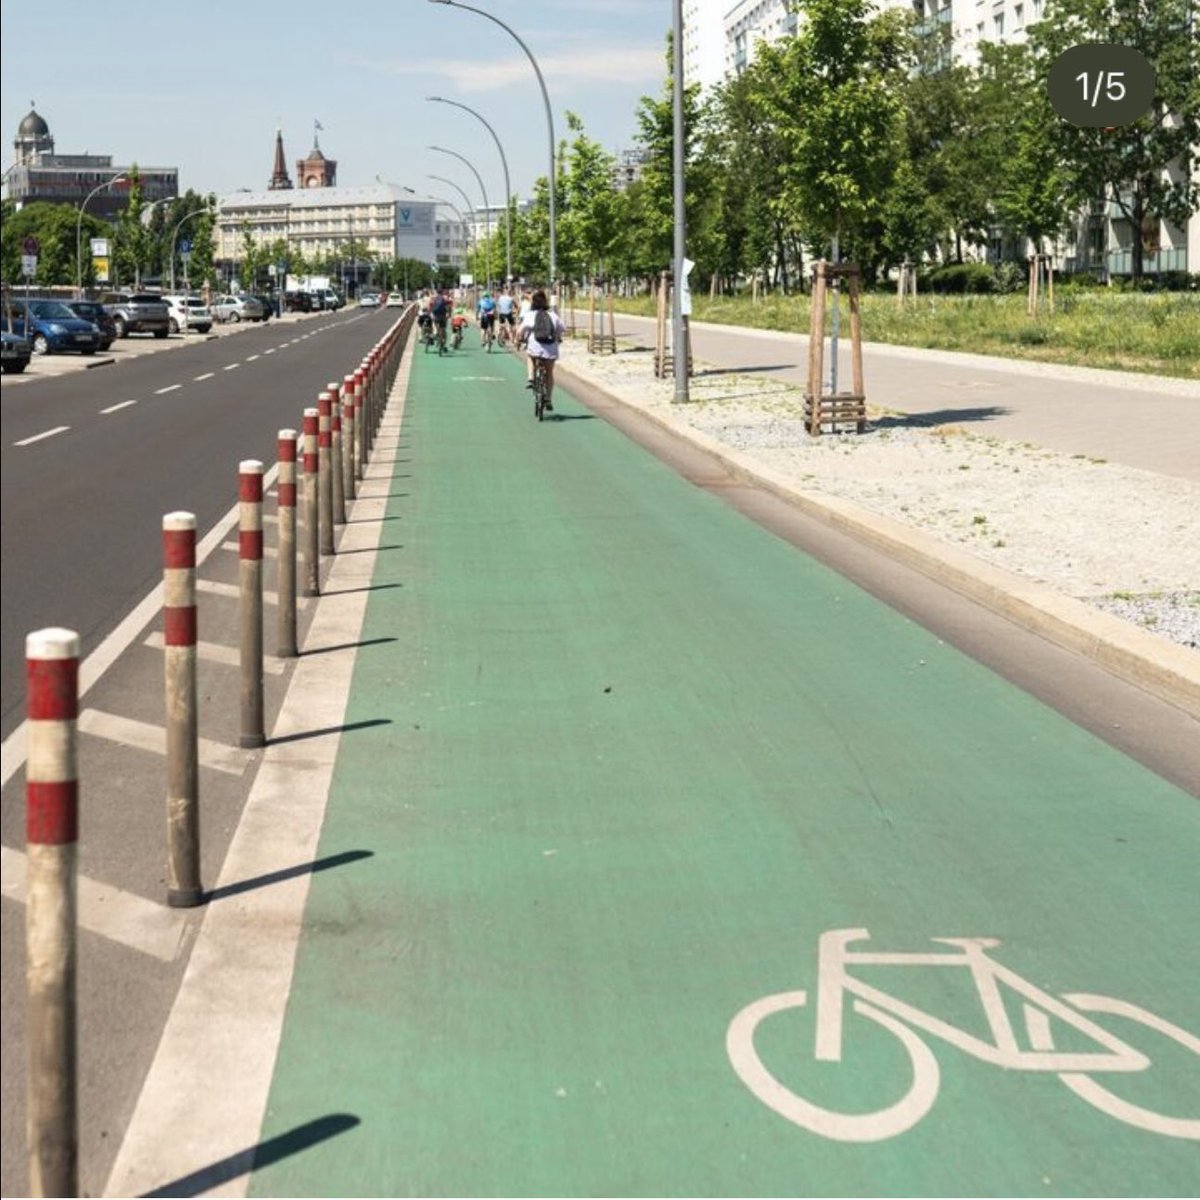 Ich finde, INNERHALB von Städten sollte es KEINE doppelspurigen Straßen mehr für Autos geben.

Eine genügt. Wenn es zwei gibt: die zweite nur für ÖVNP und Fahrräder. Bei drei: eine für Autos, eine für ÖPNV/Taxen/Rettungsdienst und eine protected bike line! 🌻

#nichtMitUns